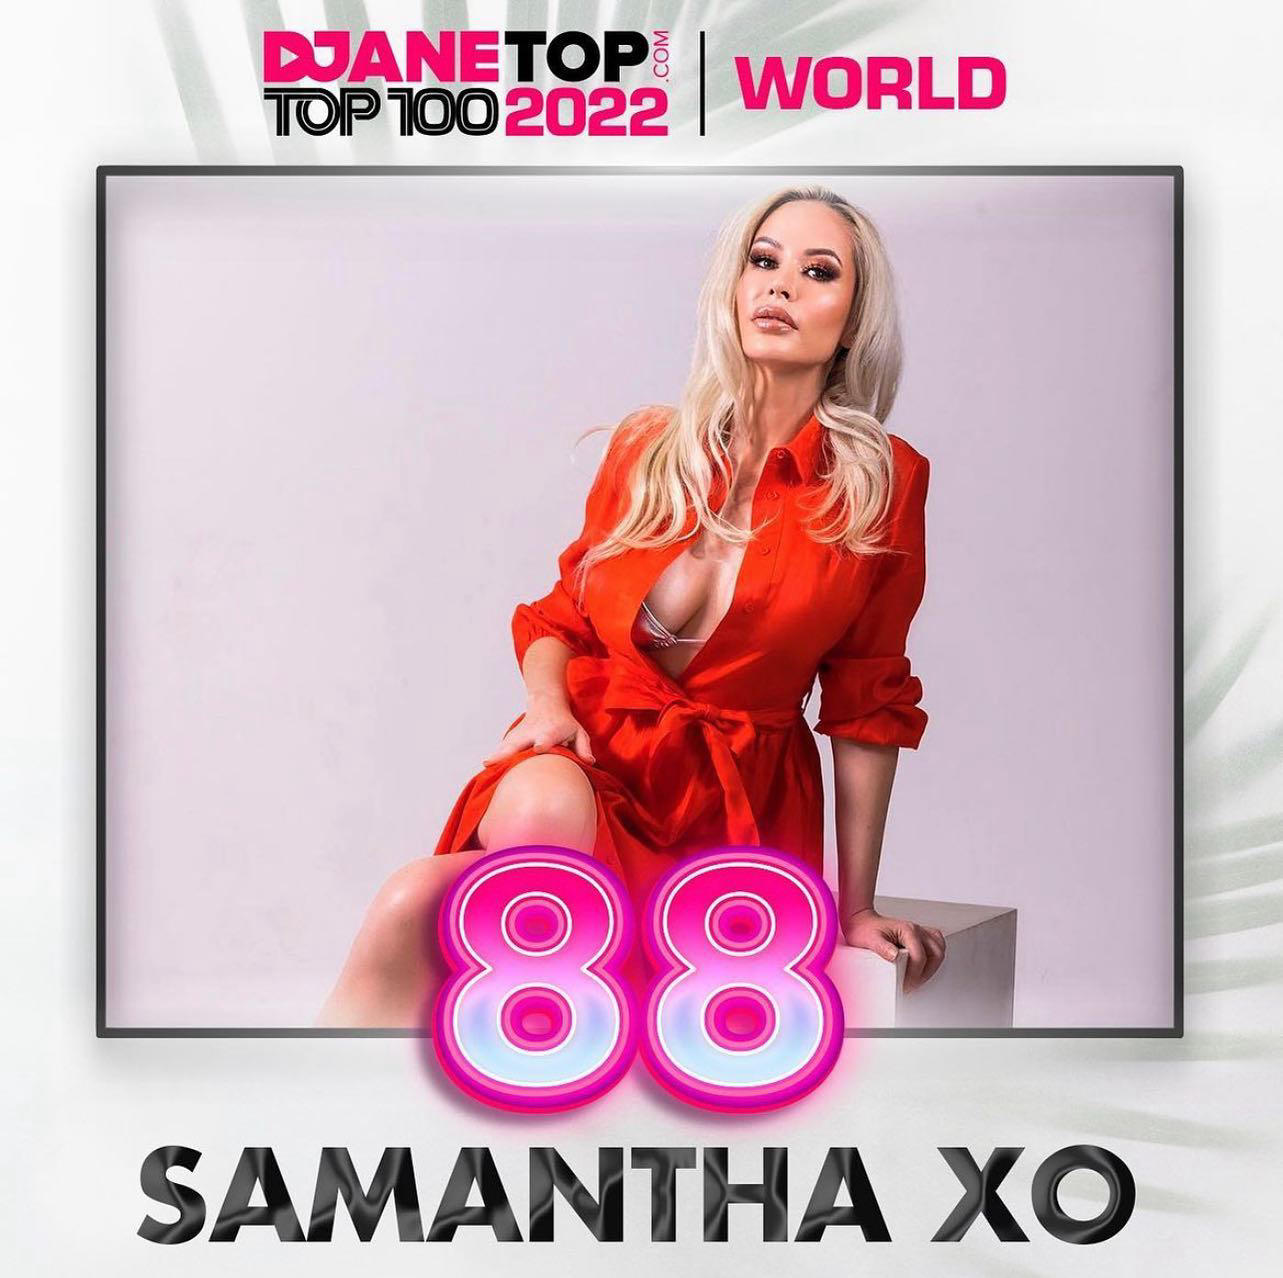 Samantha XO - #DJSamanthaXO Ranked #88 Best Female DJ in the World